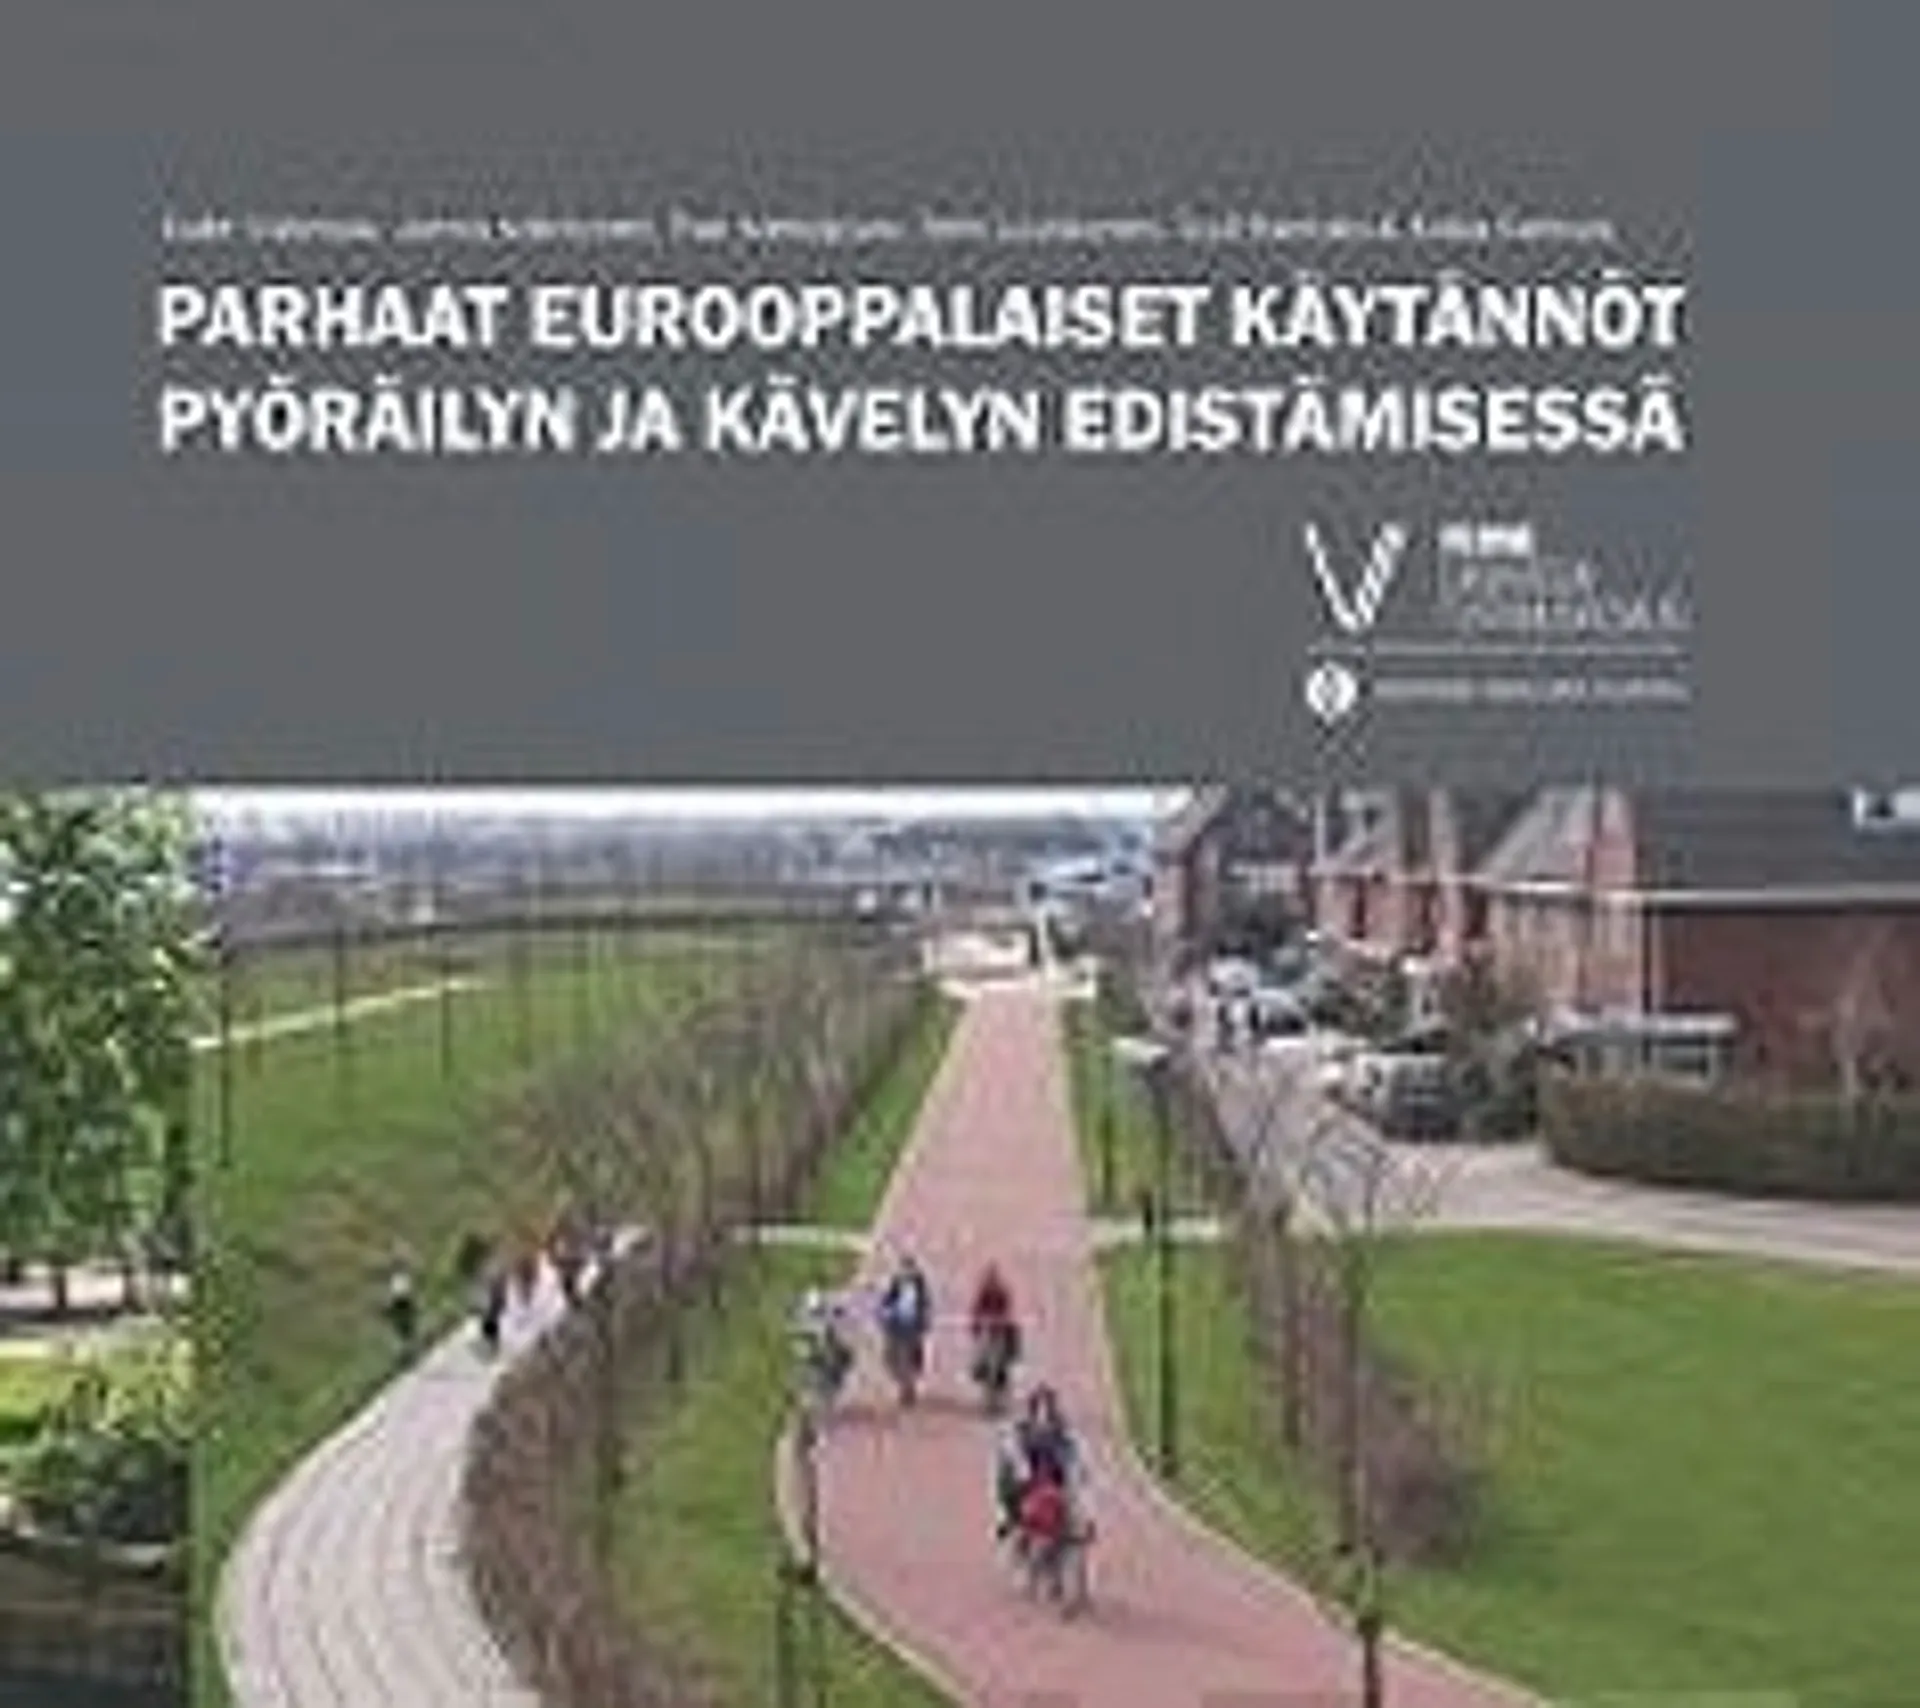 Parhaat eurooppalaiset käytännöt pyöräilyn ja kävelyn edistämisessä